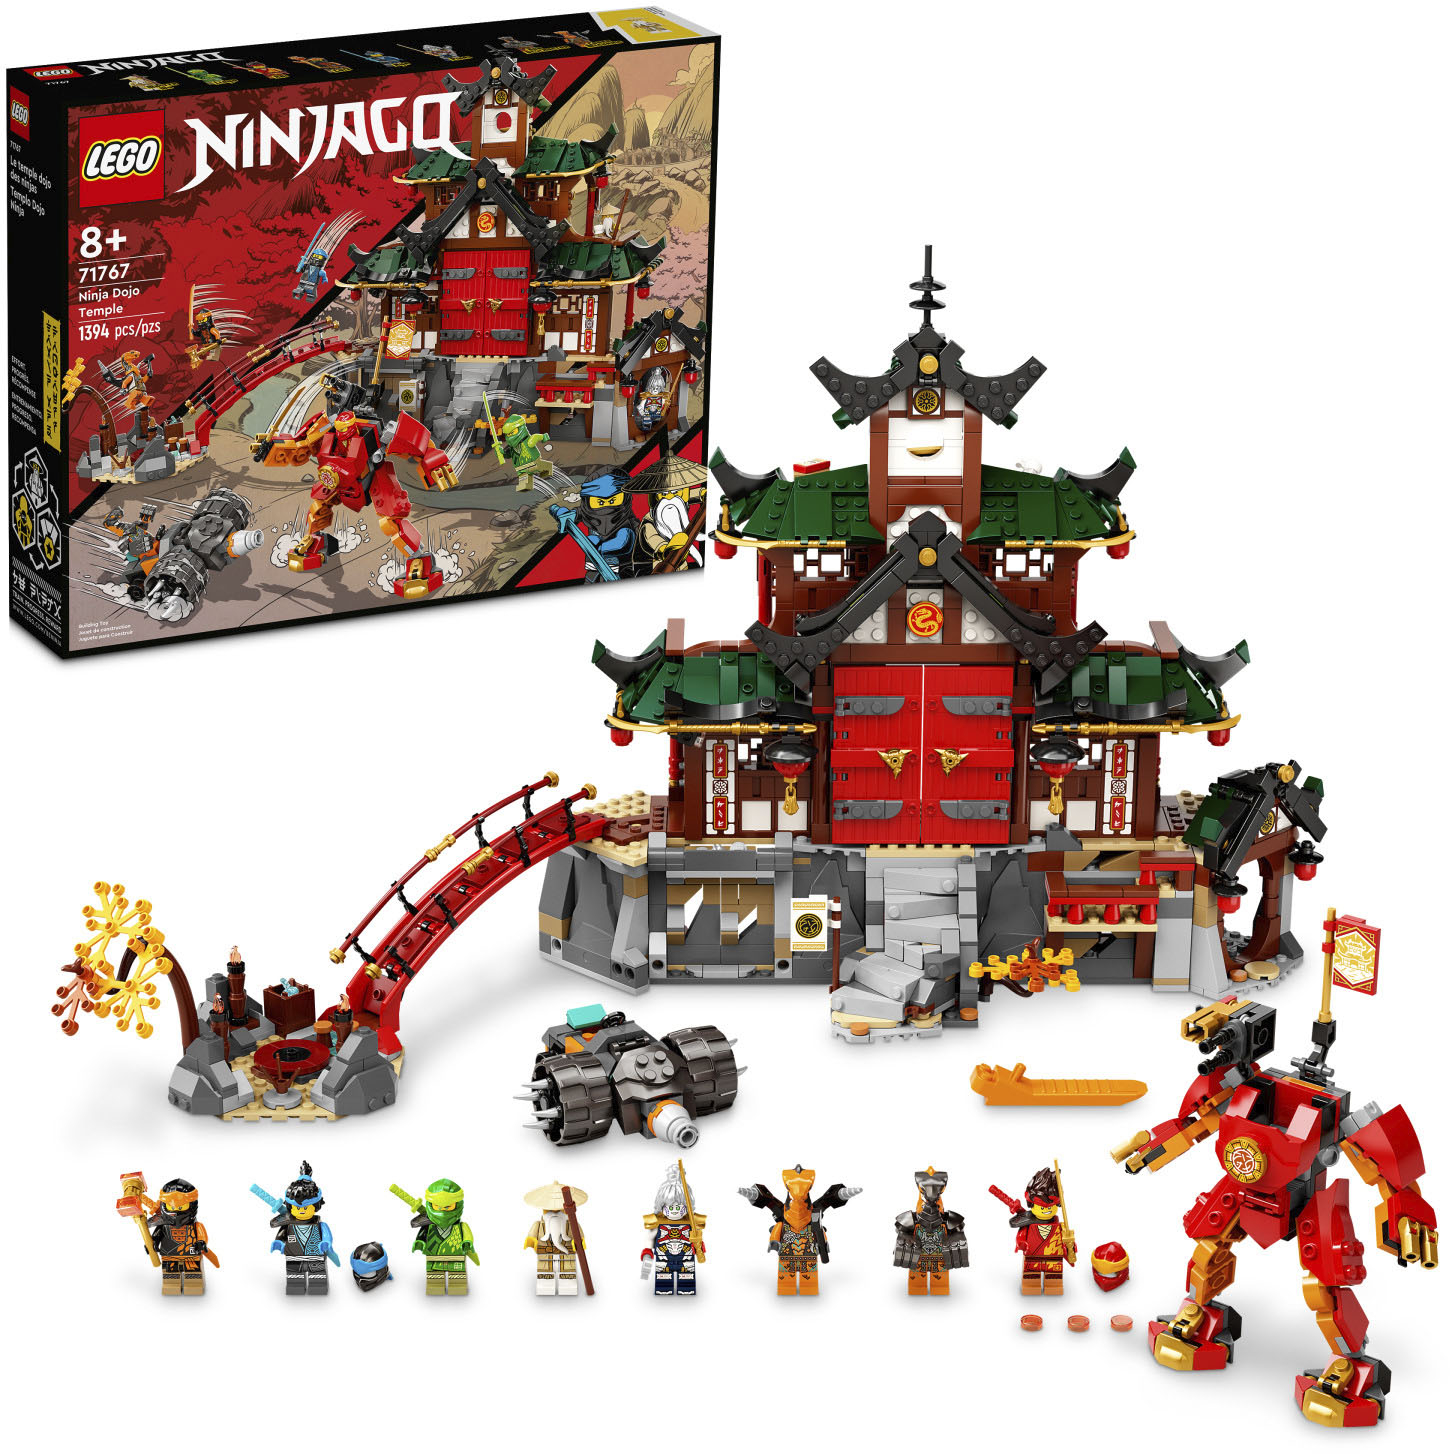 tung kilometer sælge LEGO Ninjago Ninja Dojo Temple 71767 6378904 - Best Buy